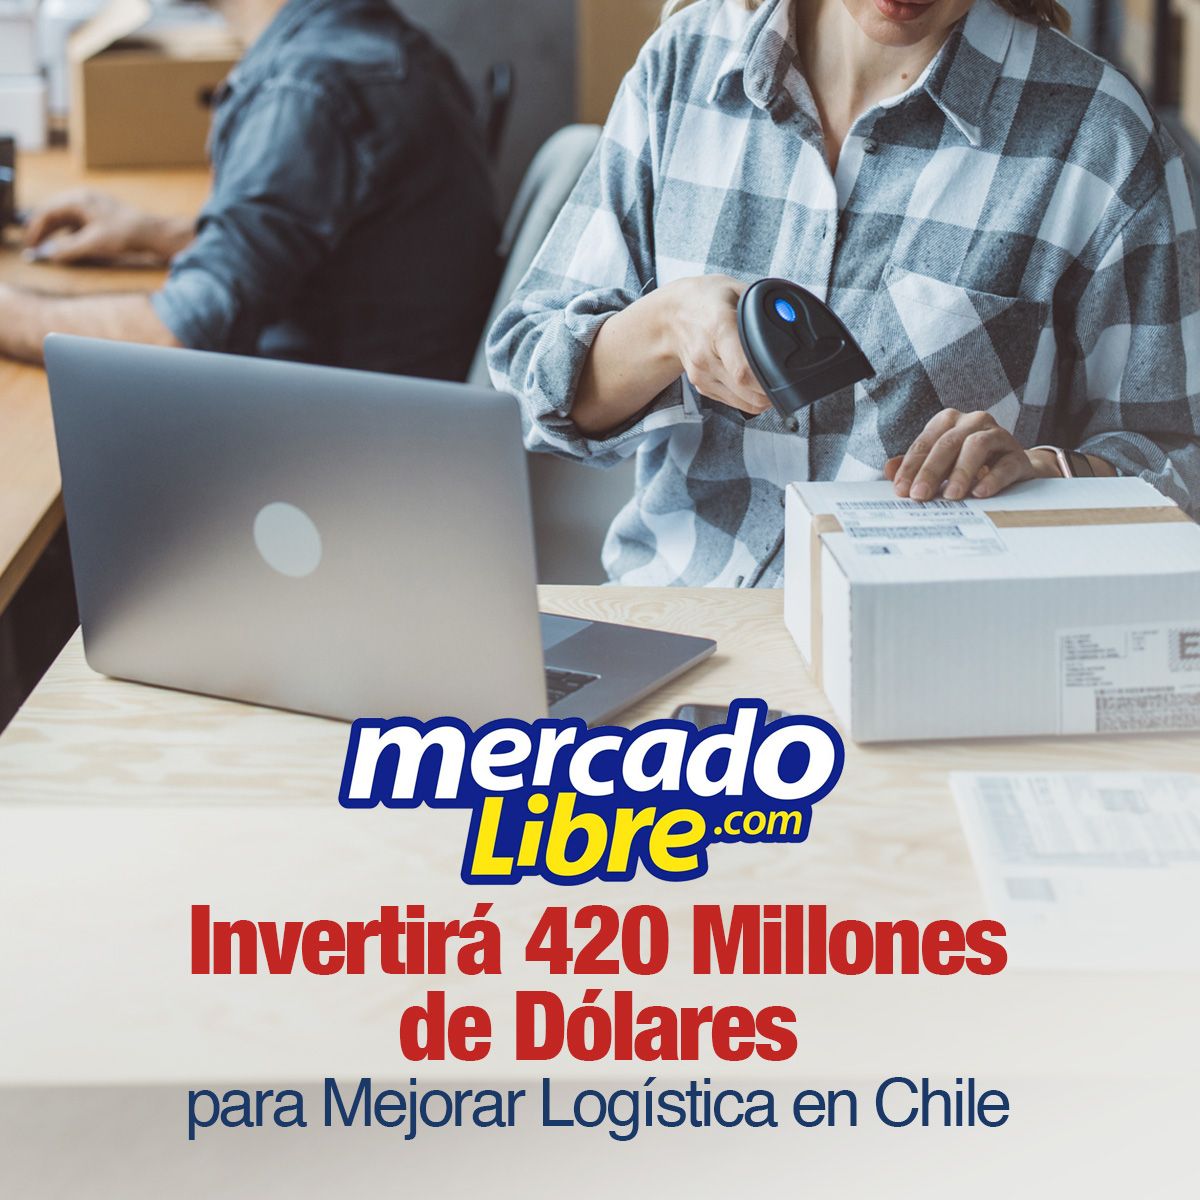 Mercado Libre Invertirá 420 Millones de Dólares para Mejorar Logística en Chile